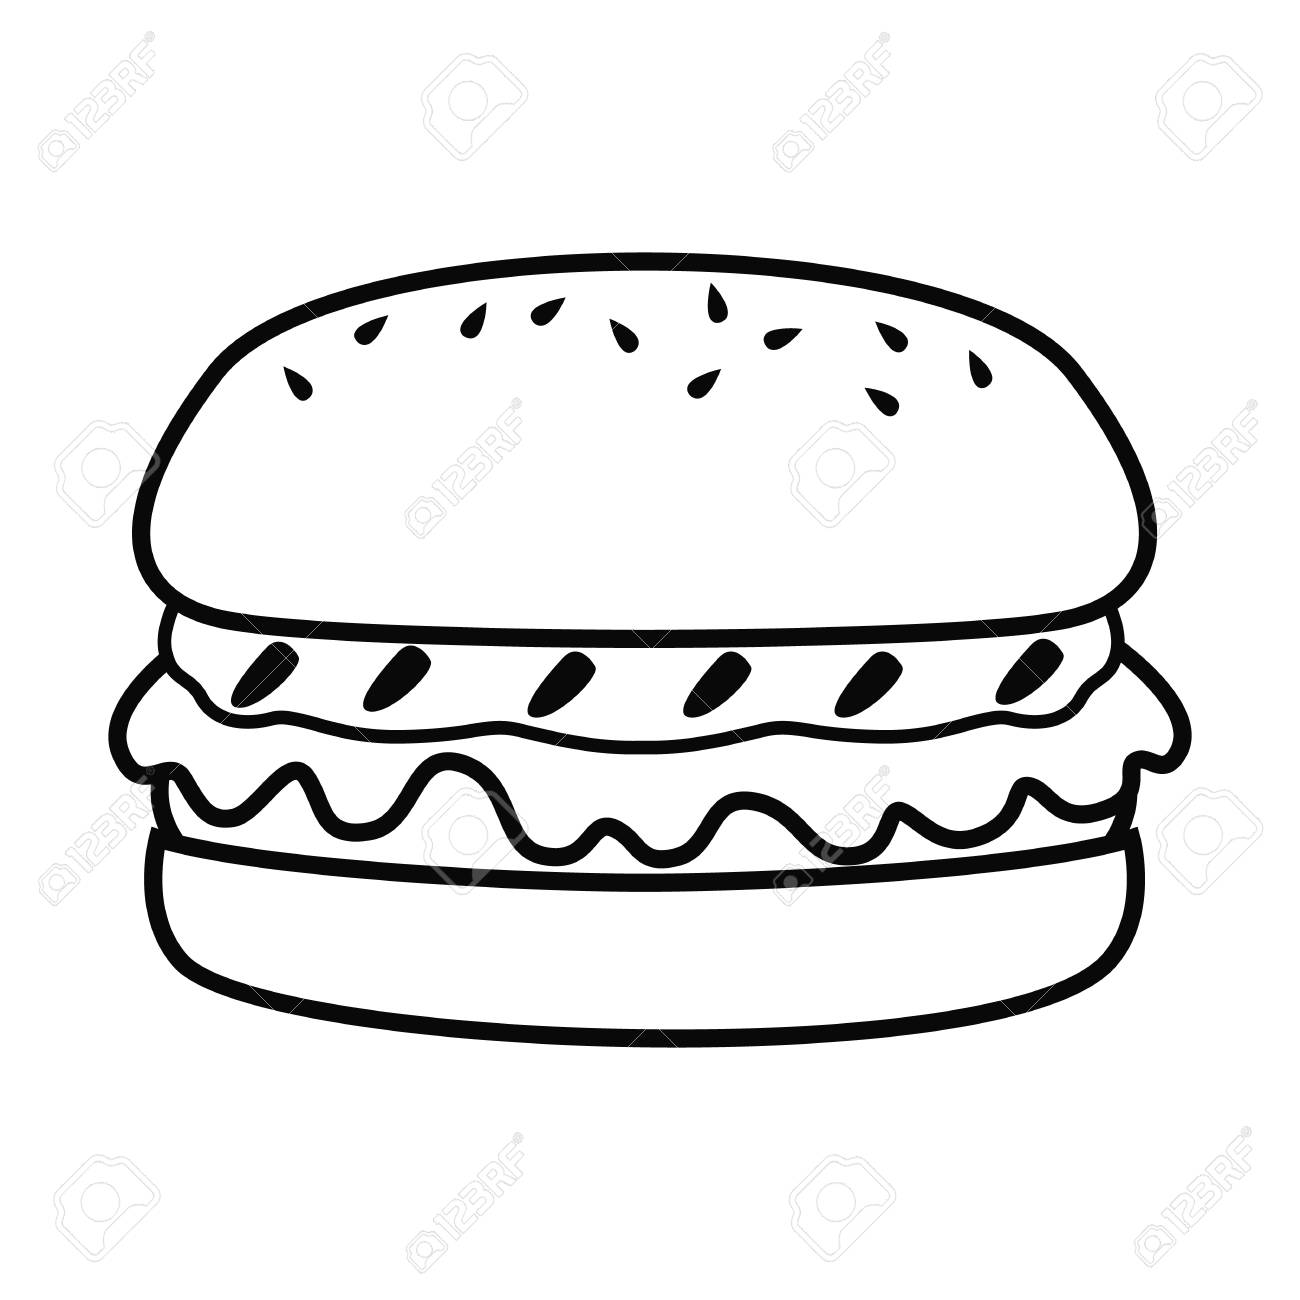 Burger drawing free.